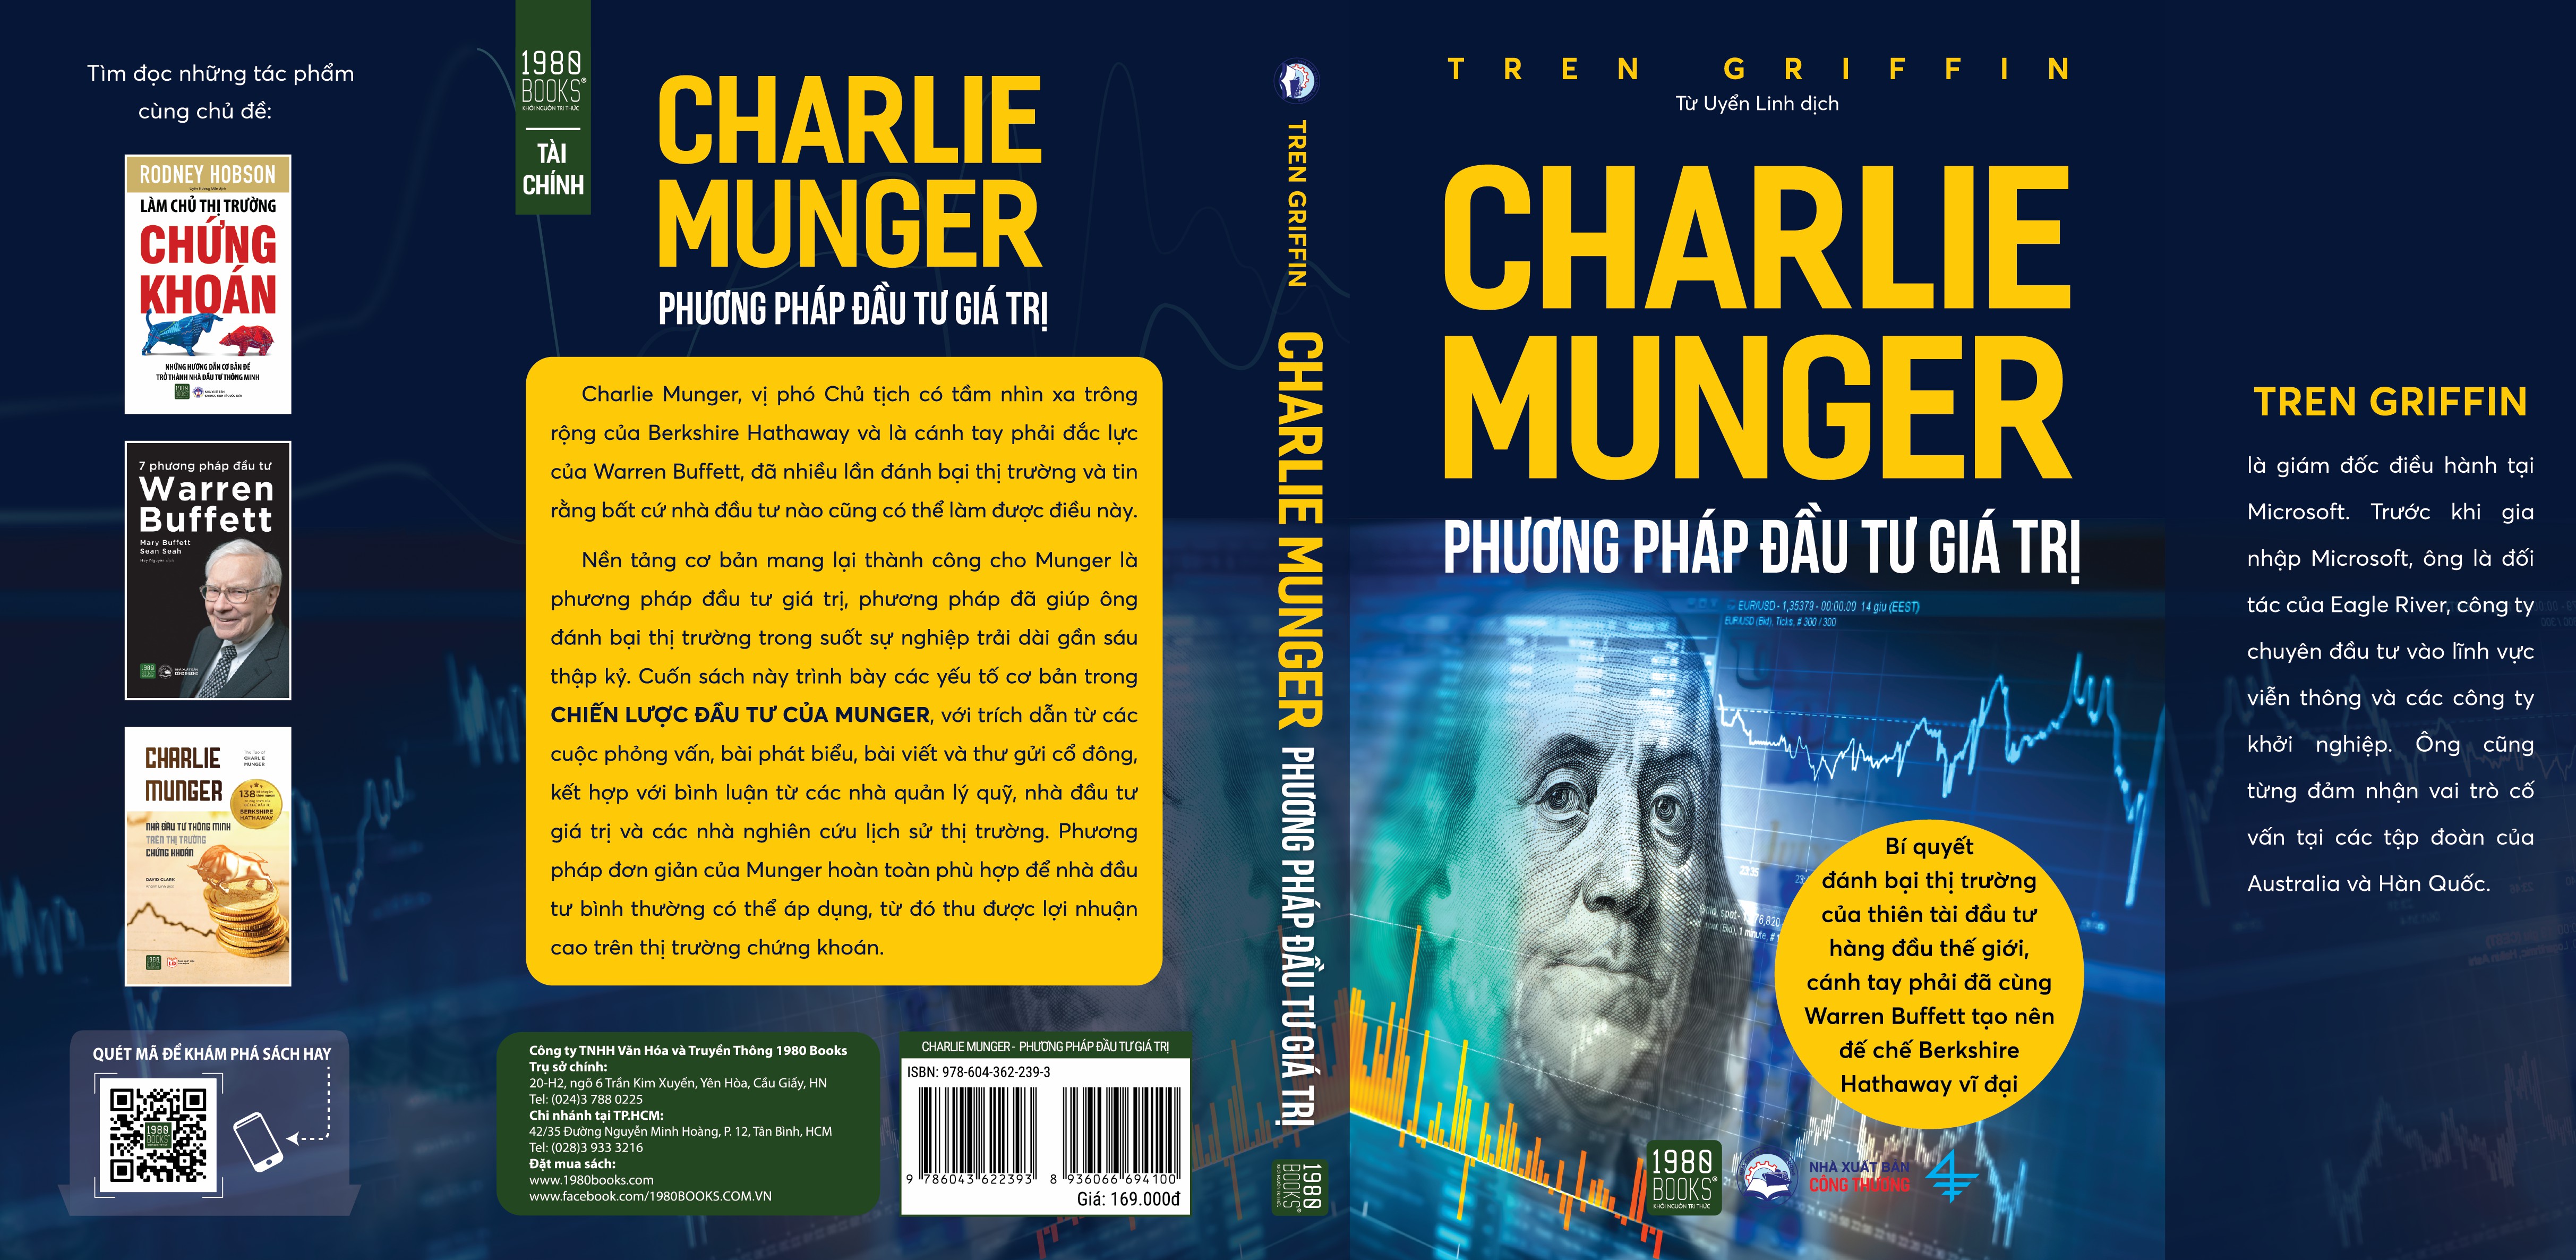 Charlie Munger - Phương pháp đầu tư giá trị